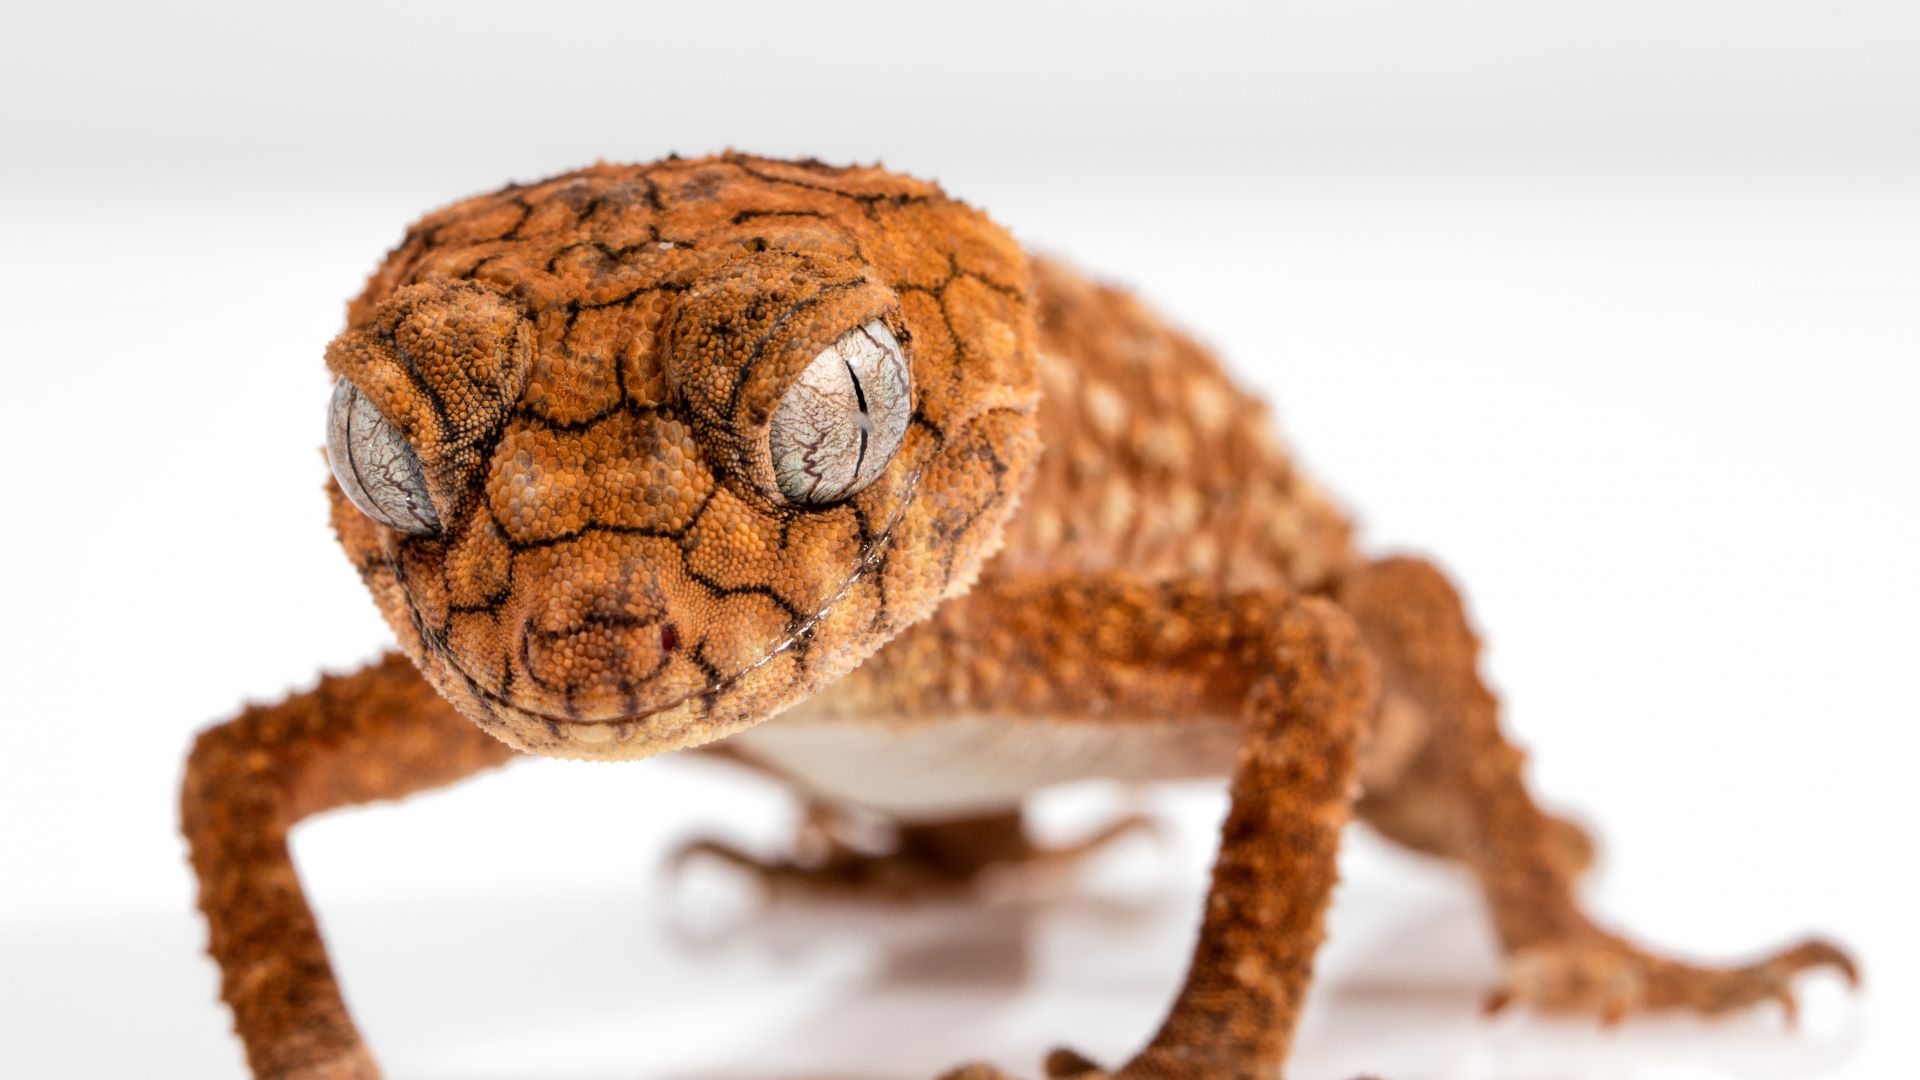 гекко, рептилия, крупный план, глаз, животные, Gecko, Caledonian Crested Gecko, reptile, lizard, close-up, eyes, animals (horizontal)